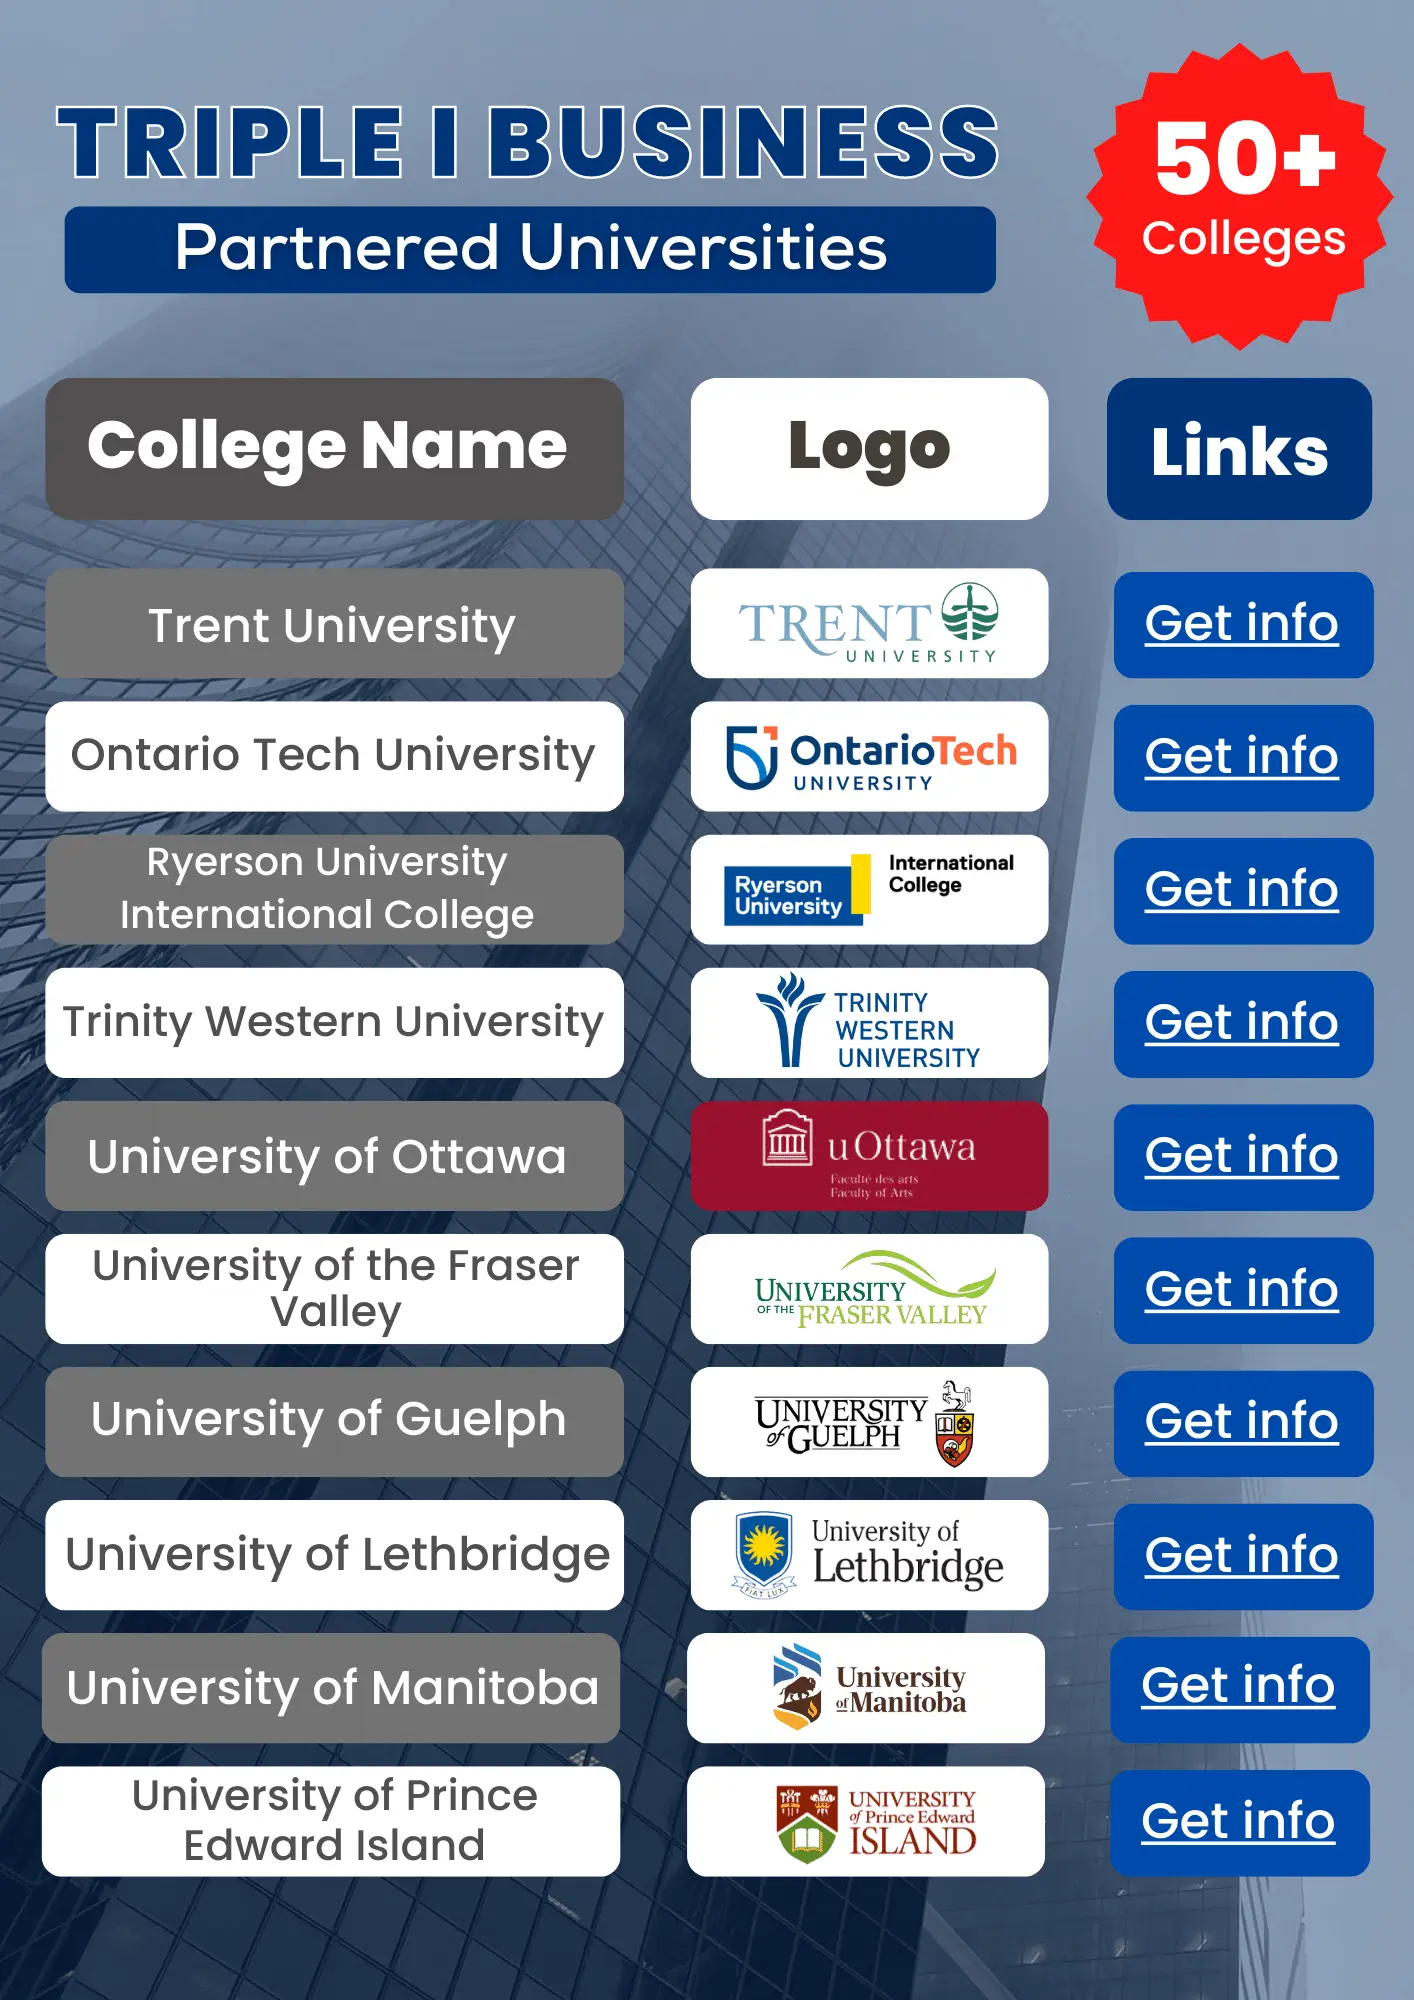 Best international universities in Canada 